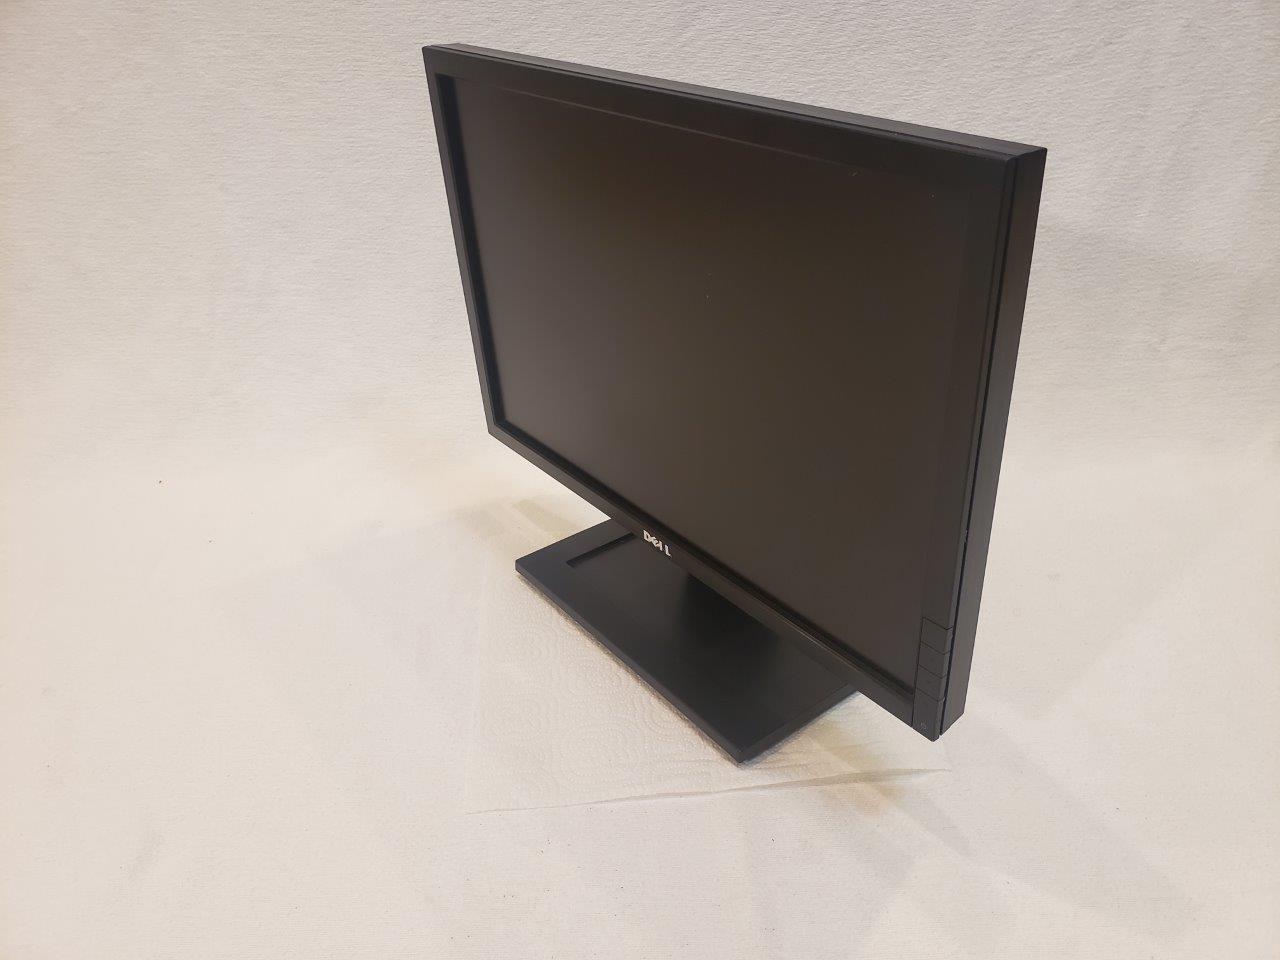 Dell E1911c Grade A 19 inch Widescreen LCD Monitor monitors small